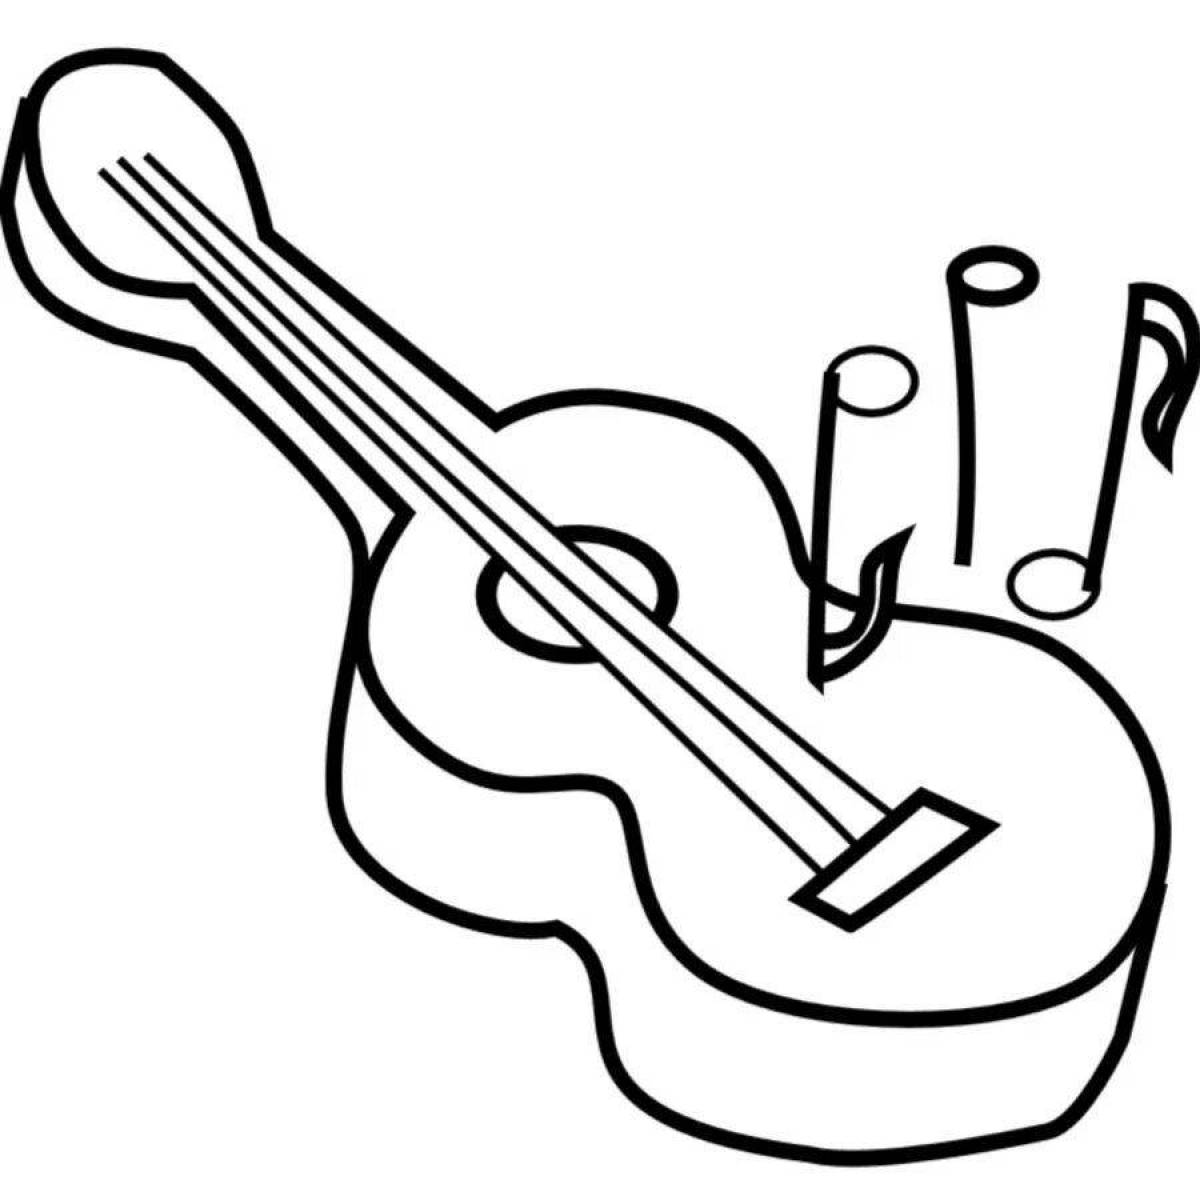 Intricate sketch of a guitar